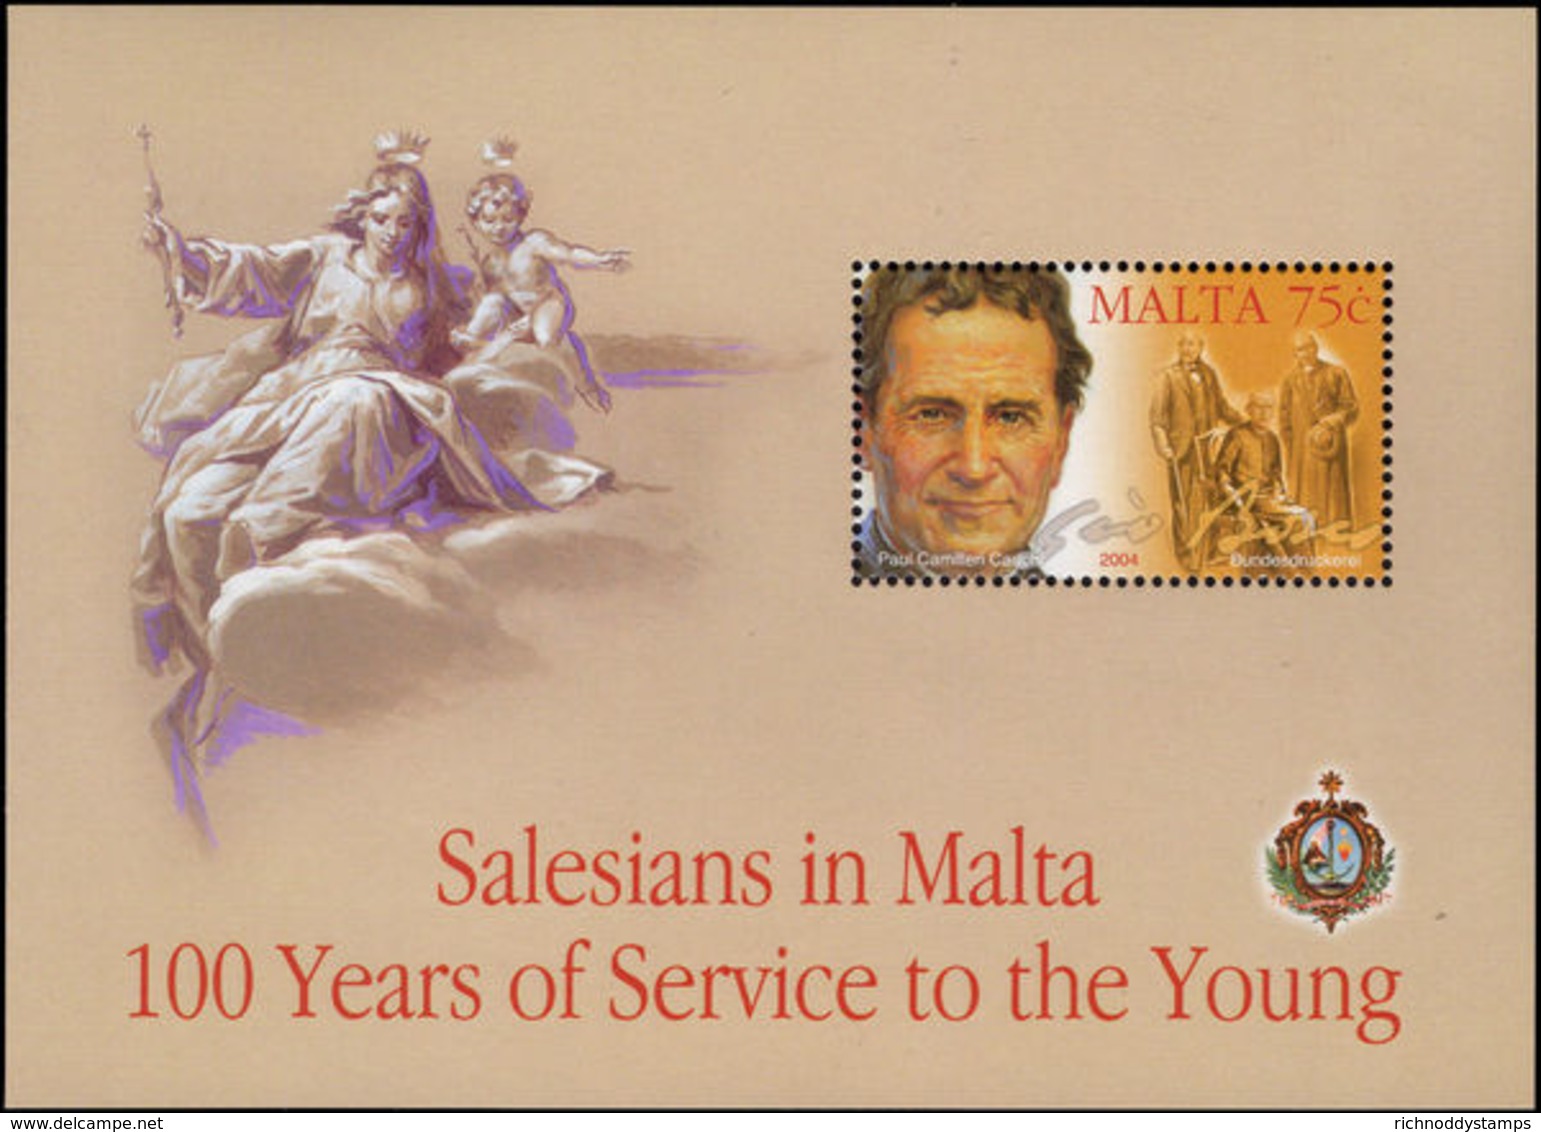 Malta 2004 Salesians In Malta Souvenir Sheet Unmounted Mint. - Malta